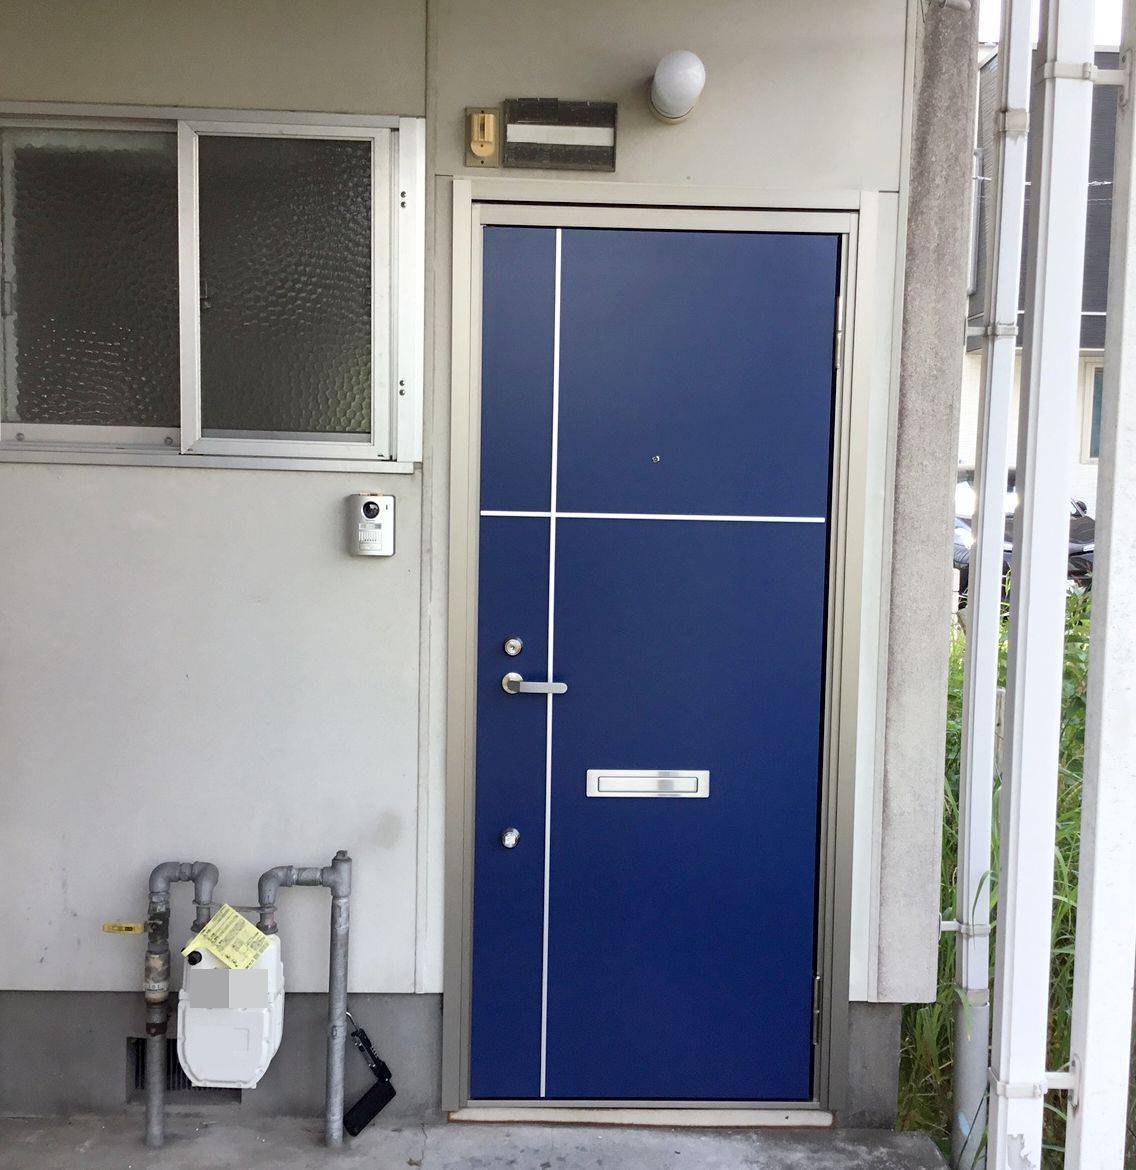 スルガリックス 静岡店のアパートの一室の玄関扉を交換いたしました。の施工前の写真1